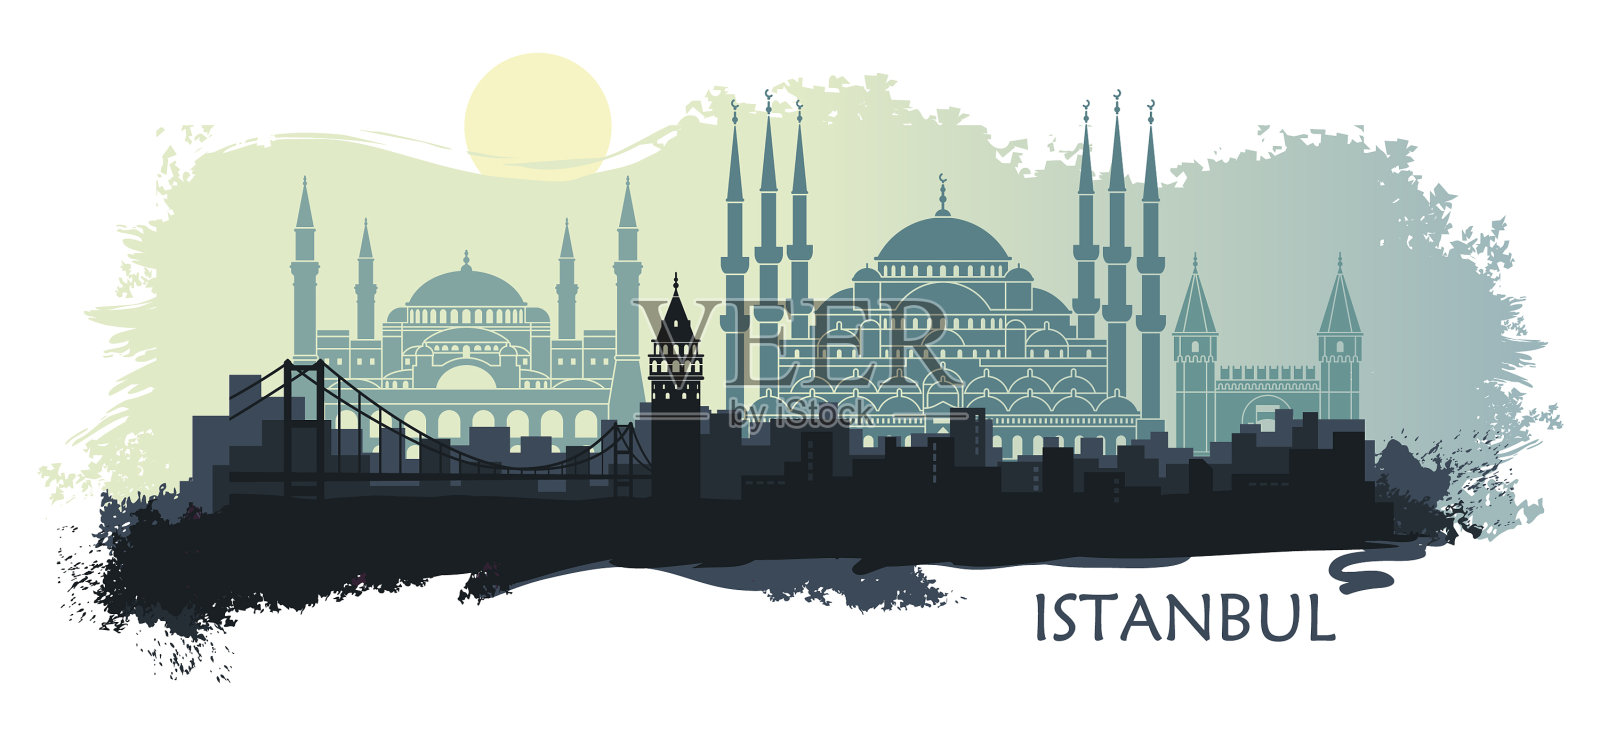 土耳其城市伊斯坦布尔的景观插画图片素材